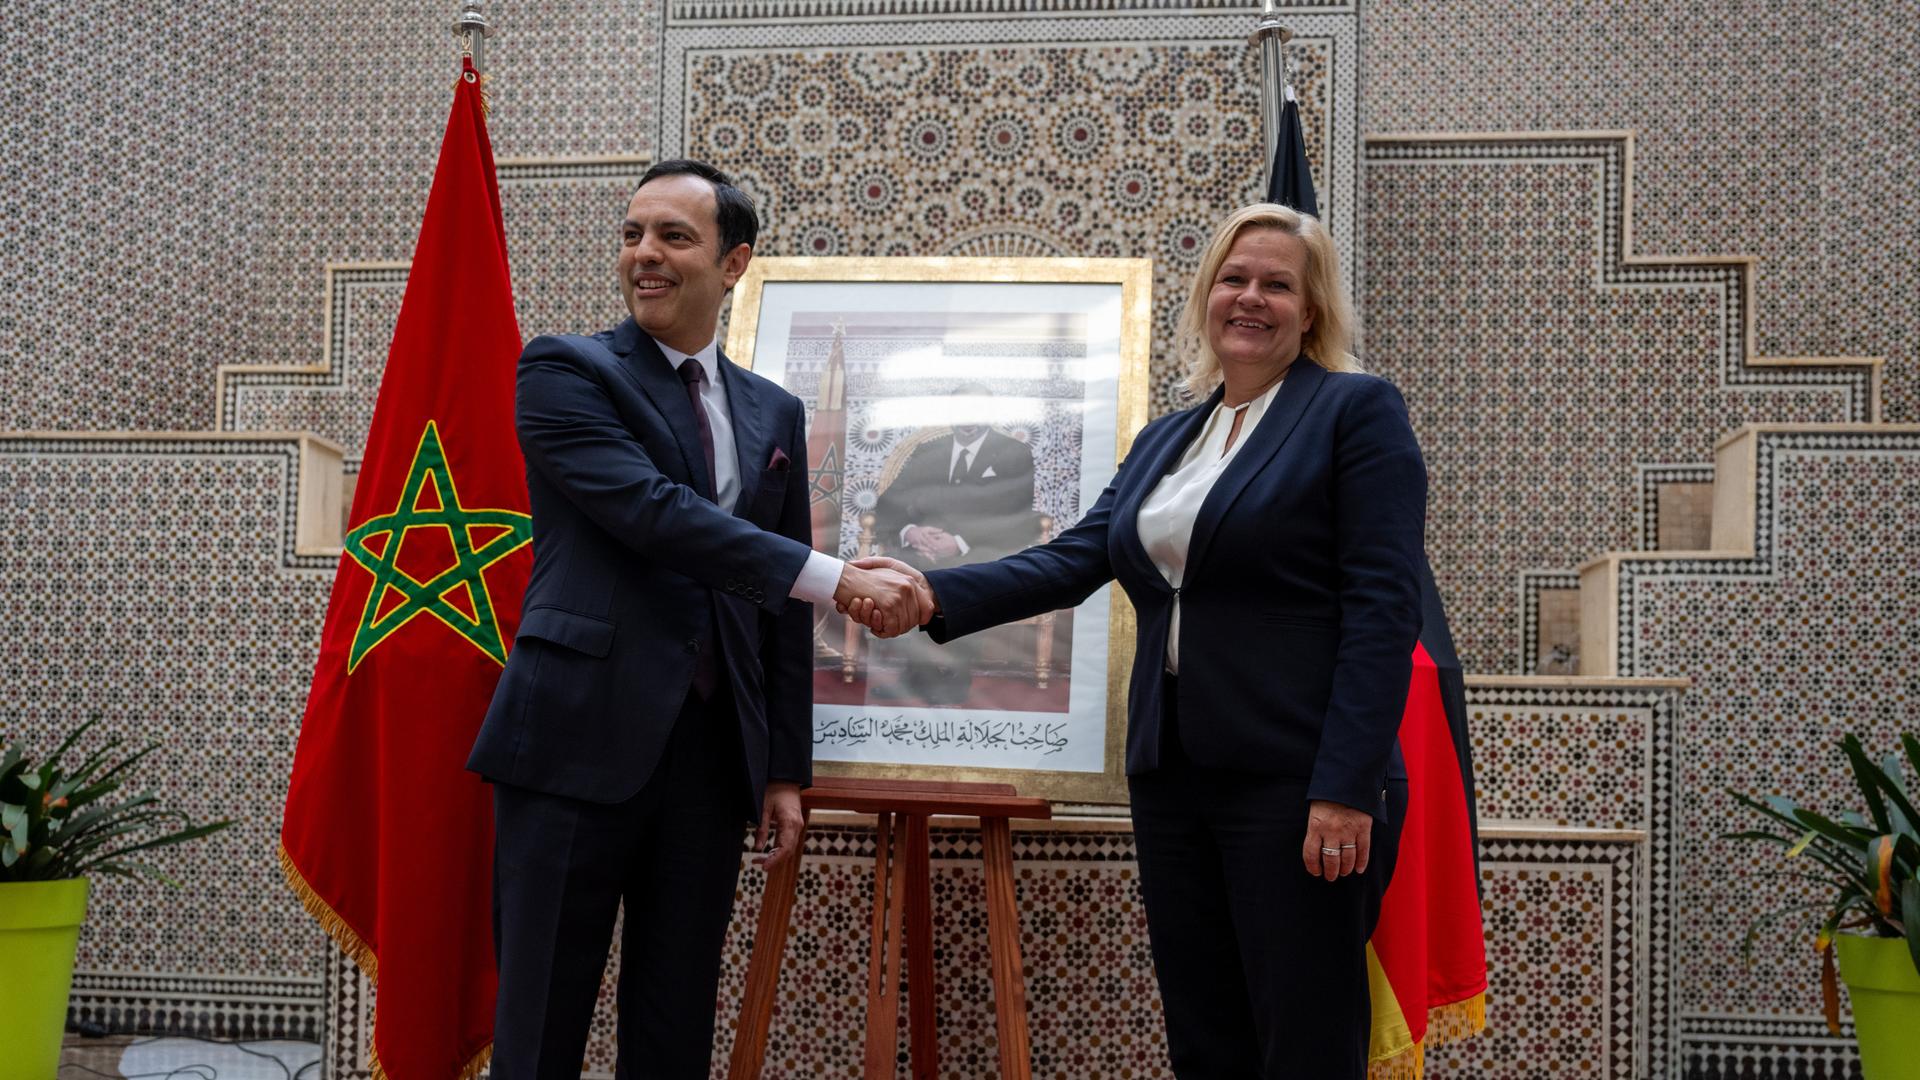 Younes Sekkouri (l.), Minister für wirtschaftliche Eingliederung, Kleinunternehmen, Beschäftigung und Qualifikationen, schüttelt Nancy Faeser (SPD), Bundesinnenministerin, die Hand.. Im Hintergrund steht ein Foto von König Mohammed VI zwischen Flaggen von Marokko und Deutschland.